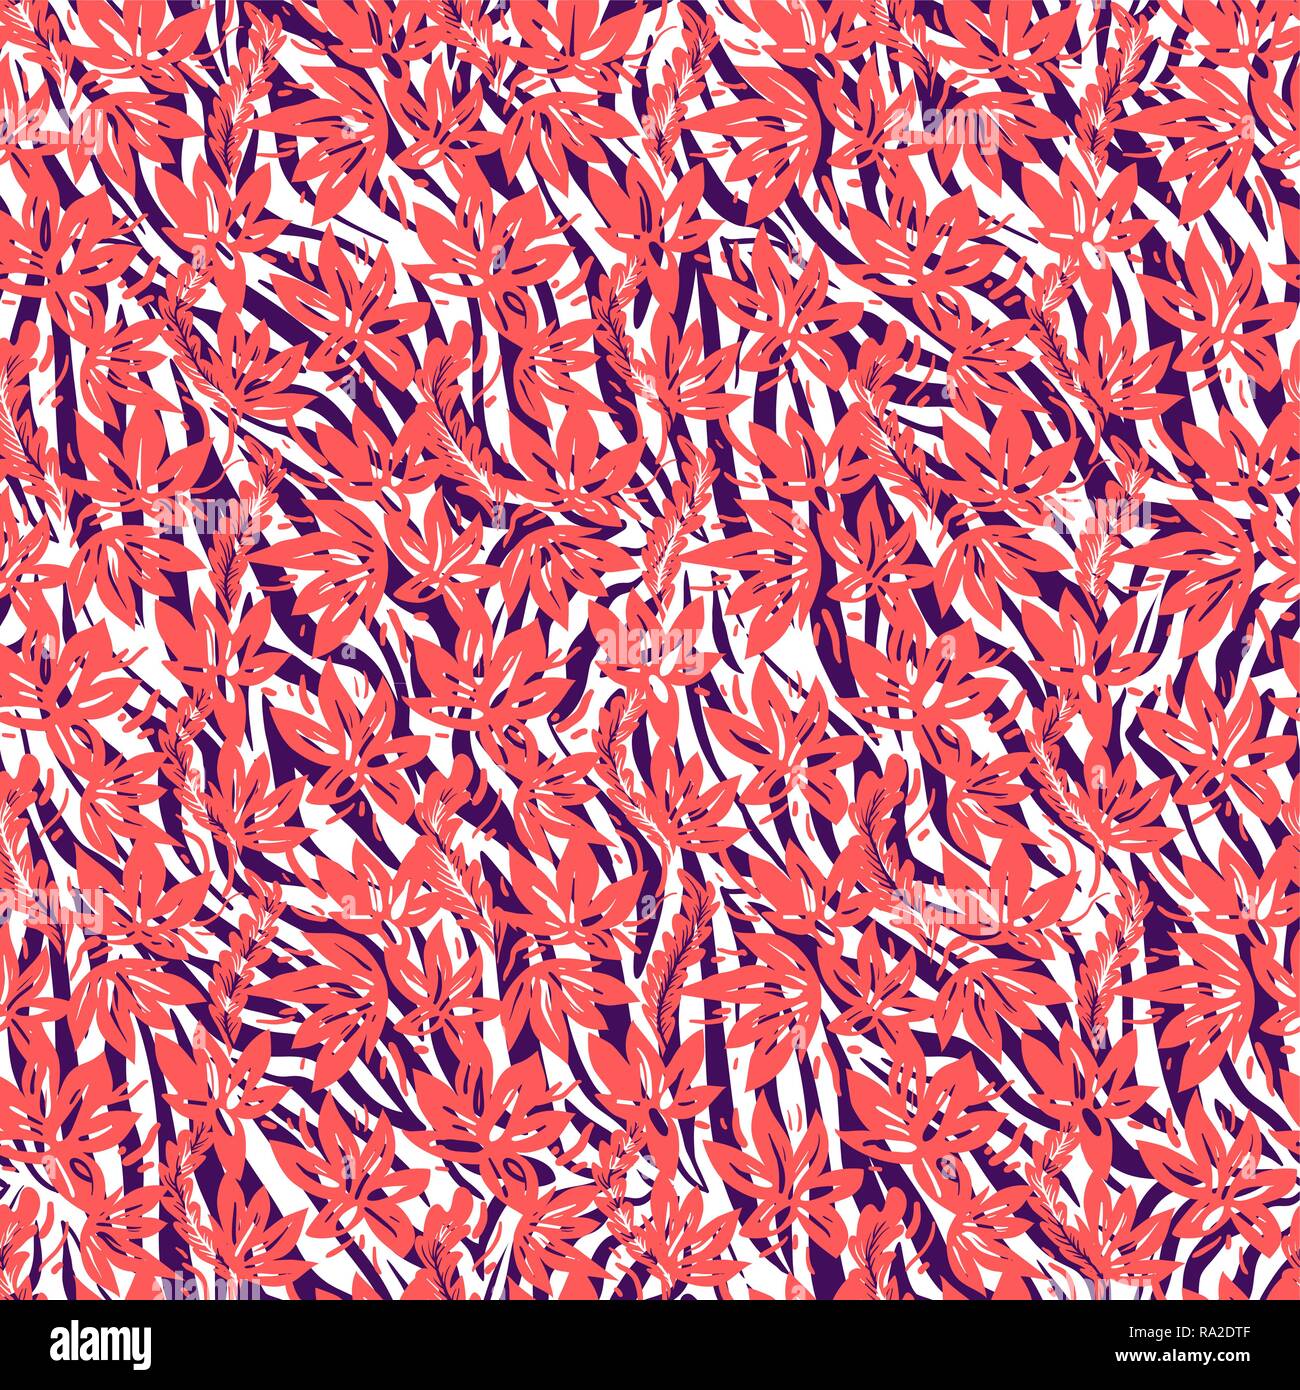 Vektor nahtlose Coral Farbe Hintergrund. Blumen und Zebra striped ethnische Muster. Stock Vektor